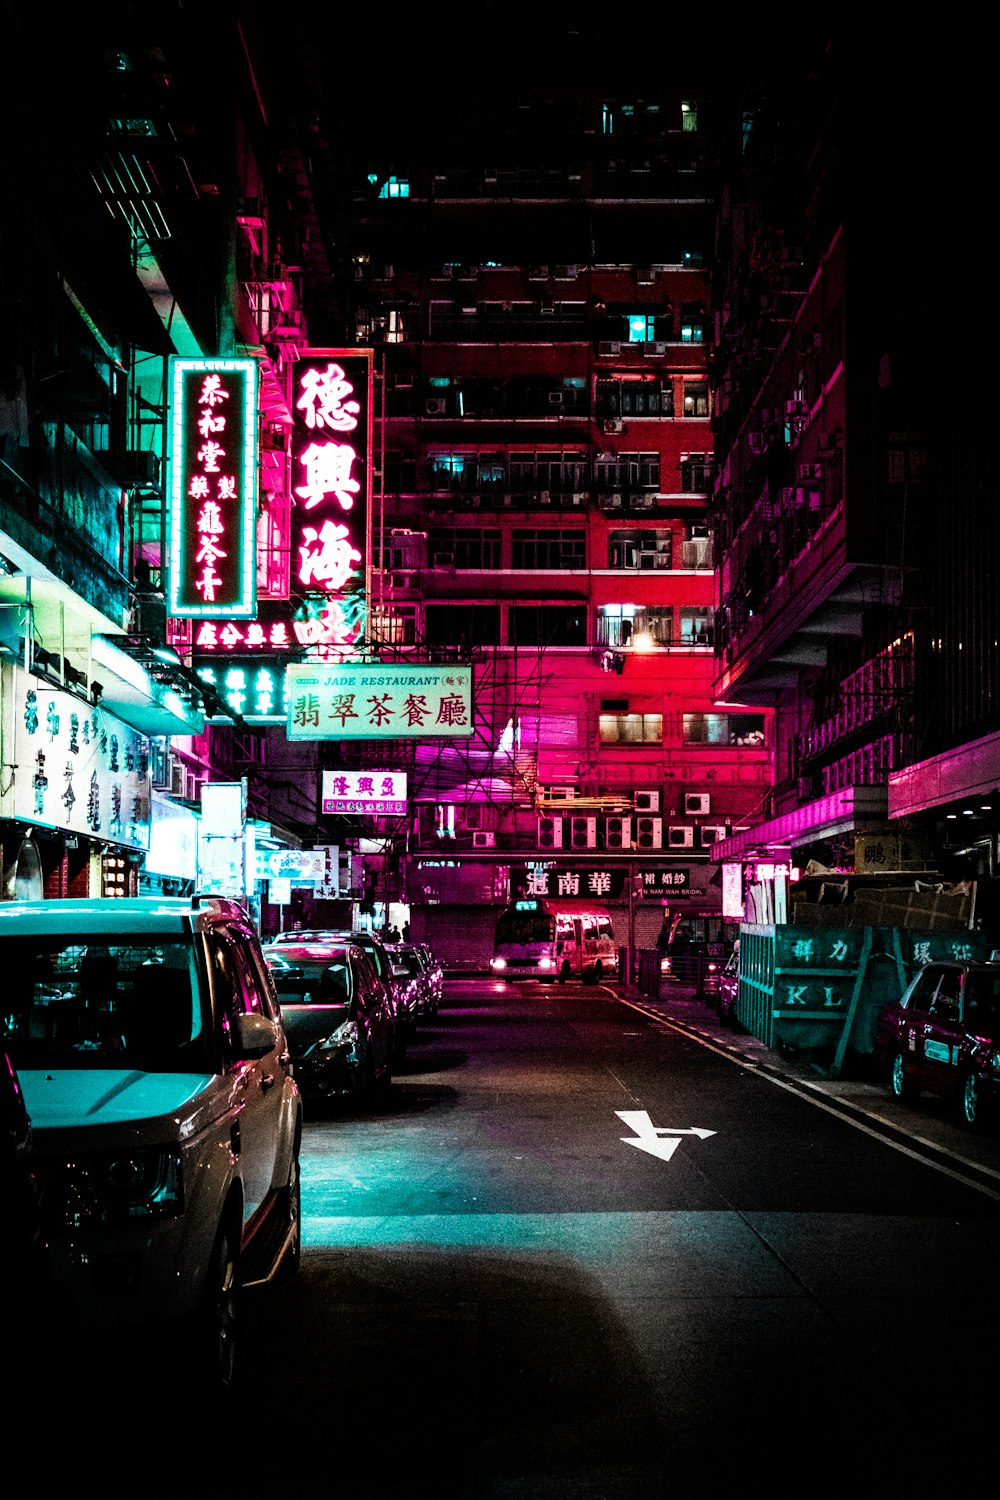 Veículos estacionam na estrada entre edifícios iluminados durante a noite